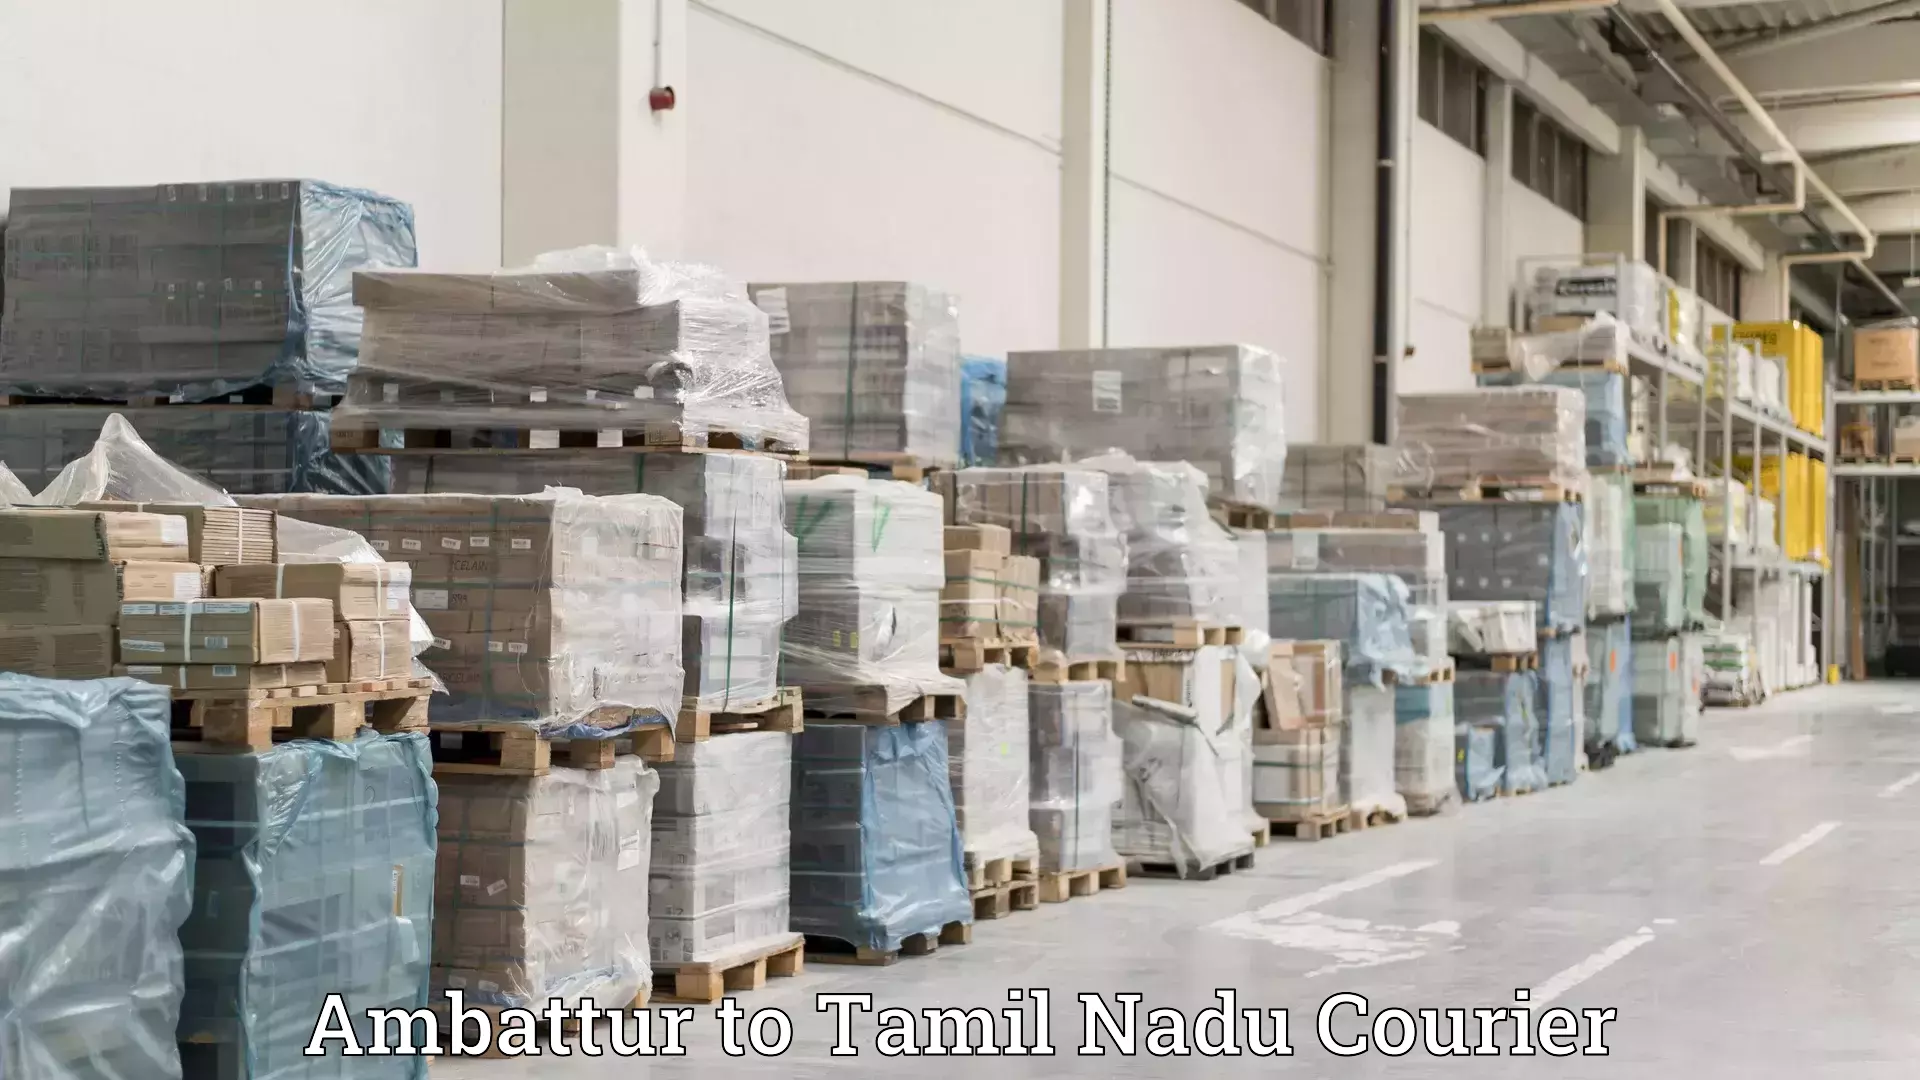 Furniture relocation experts Ambattur to Tamil Nadu